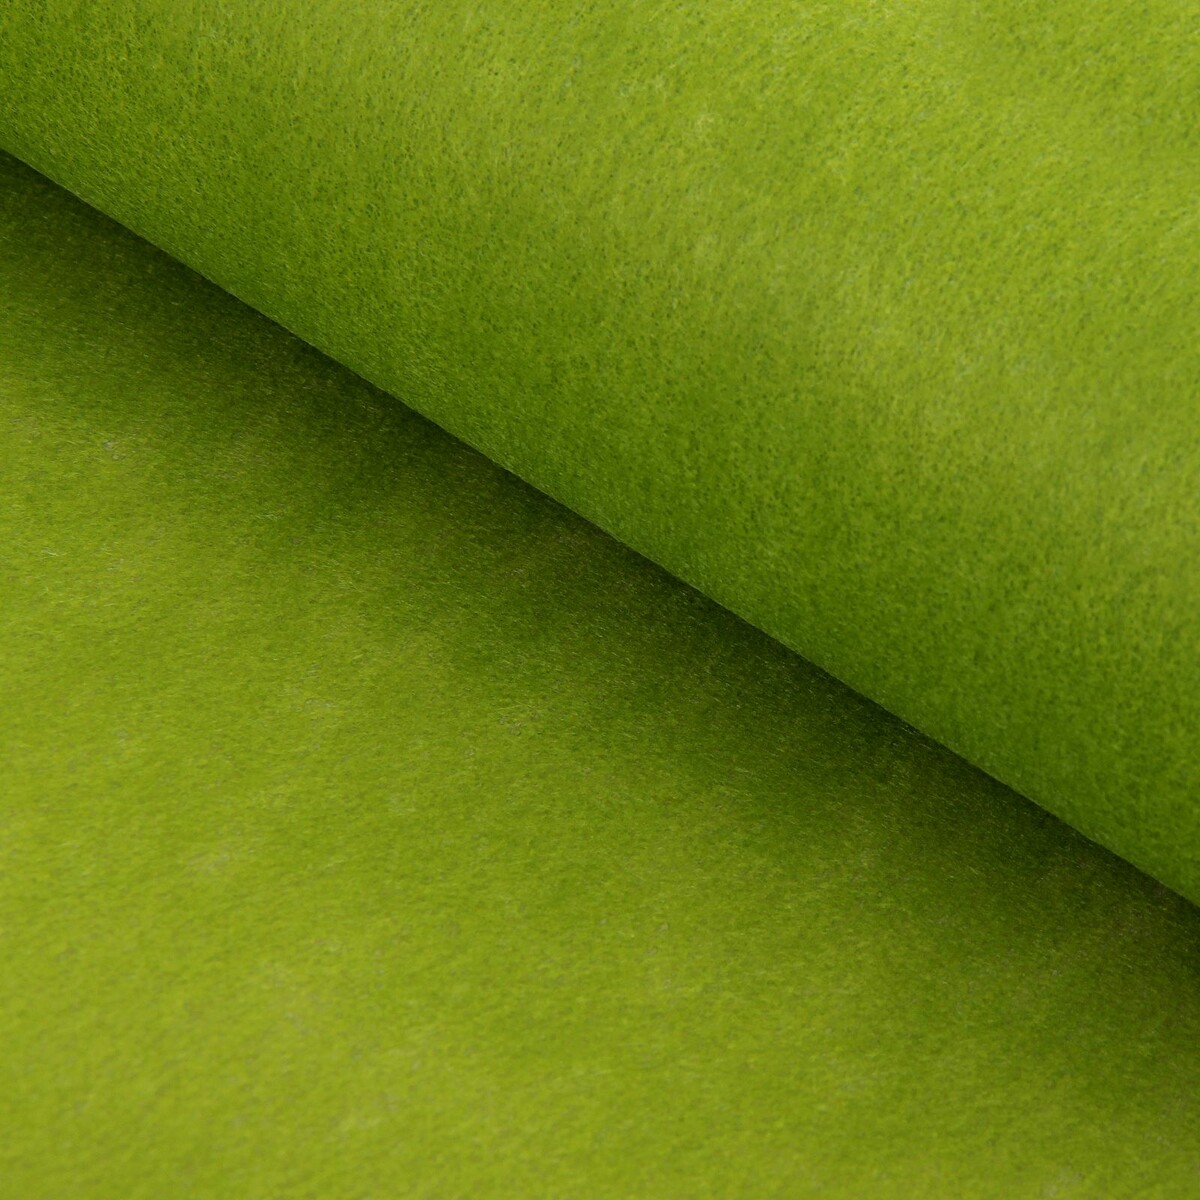 Фетр для упаковок и поделок, однотонный, оливковый, двусторонний, зеленый, рулон 1шт., 50 см x 15 м фетр для упаковок и поделок однотонный оливковый двусторонний зеленый рулон 1шт 50 см x 15 м